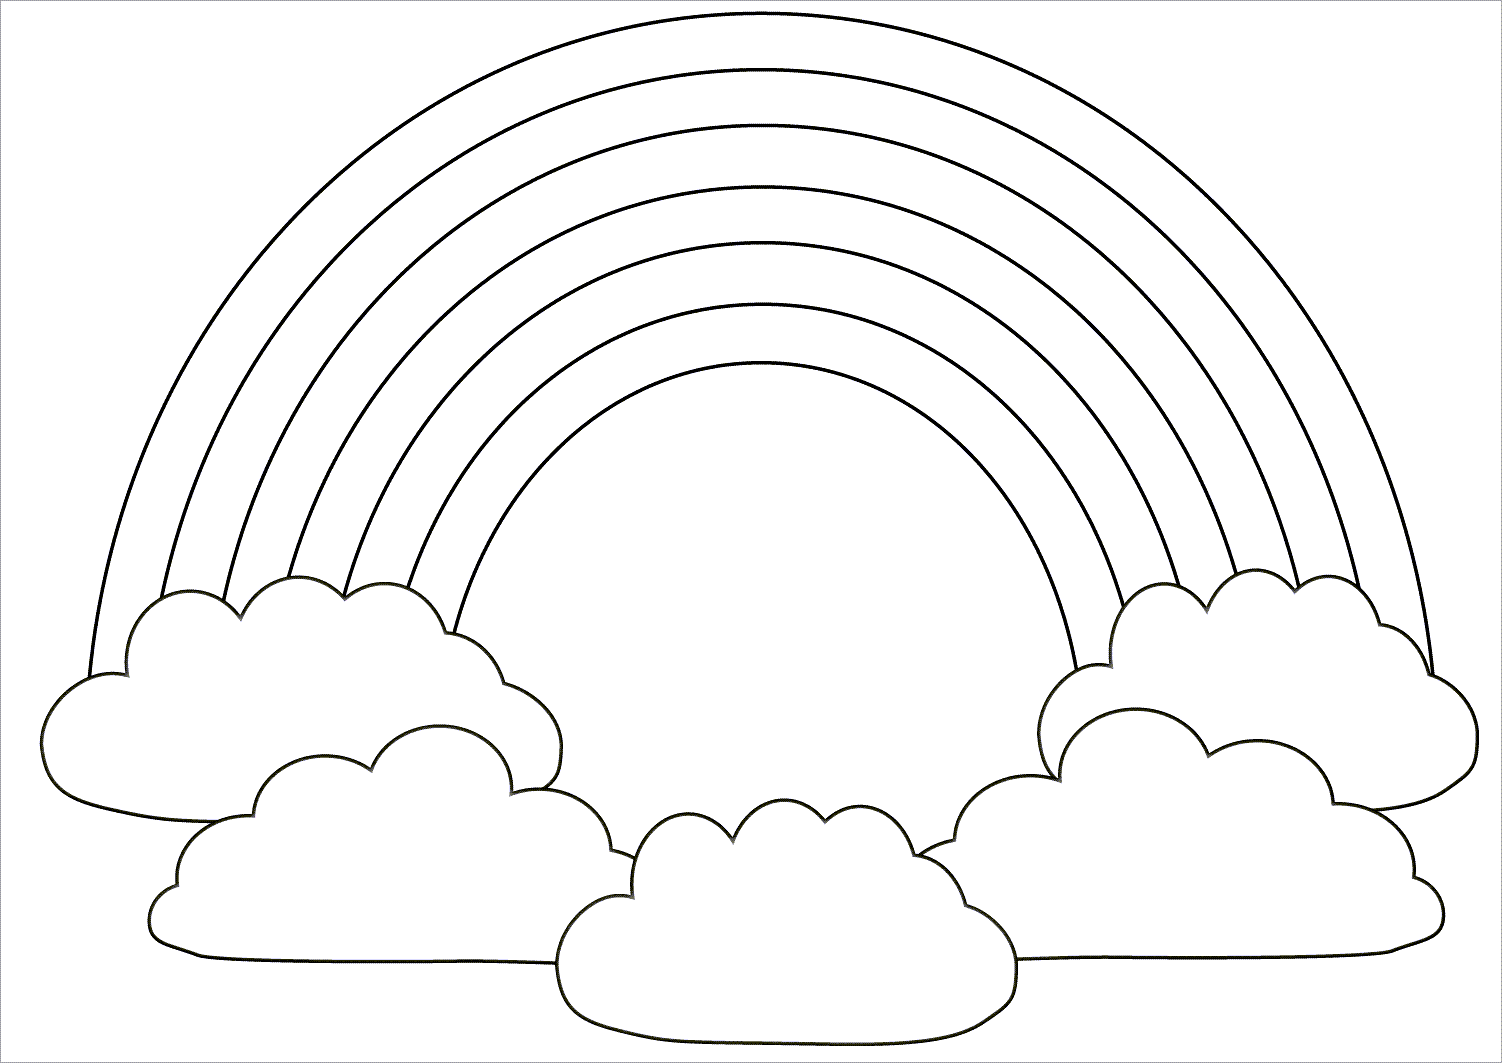 Em hãy nêu phép ghép hình và các bước thực hiện để vẽ đám mây như Hình 137